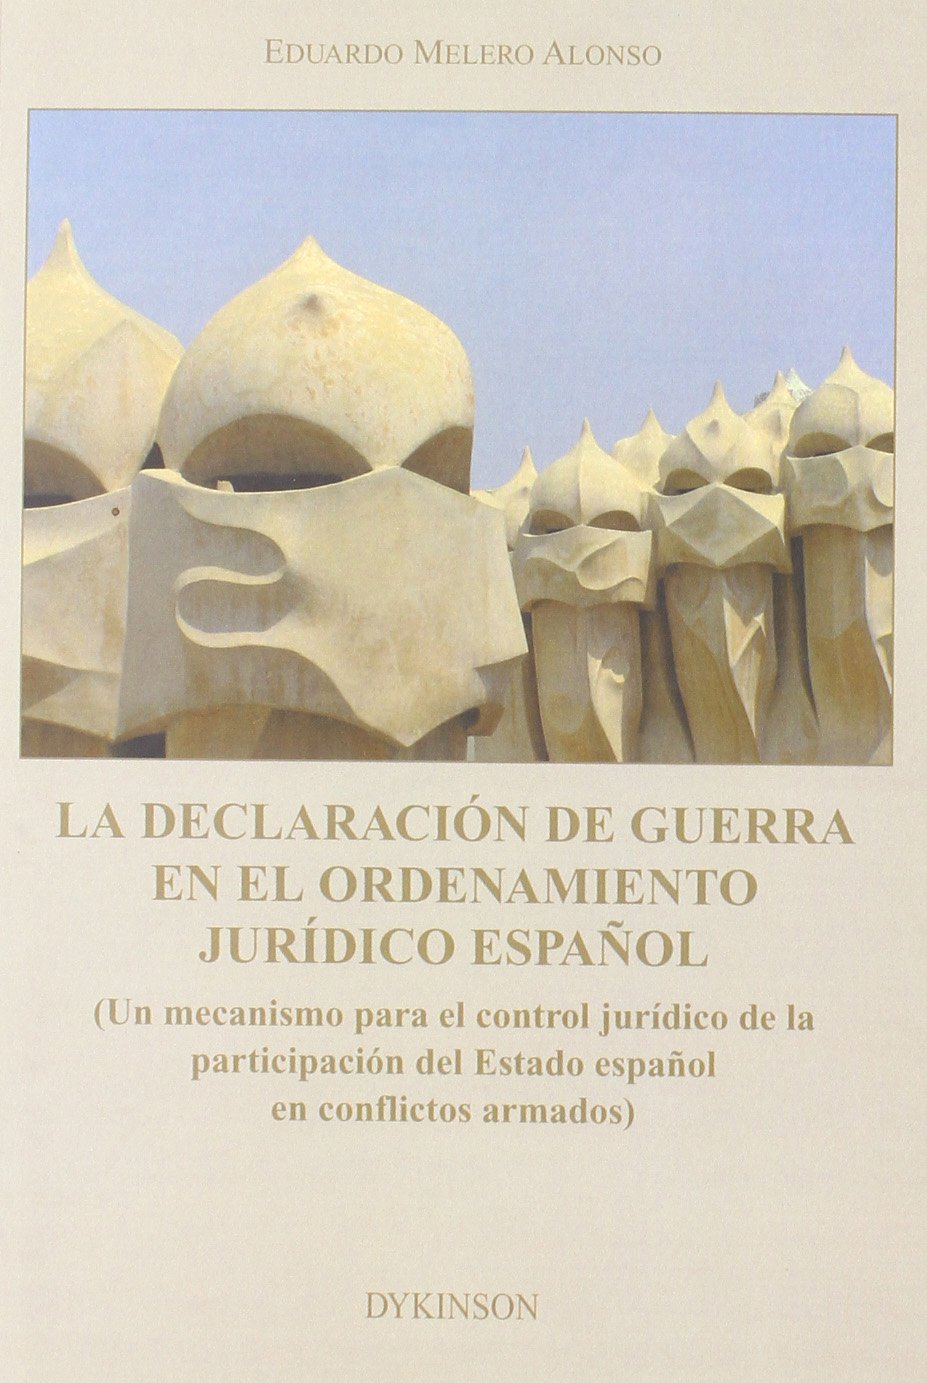 La declaración de guerra en el ordenamiento jurídico español